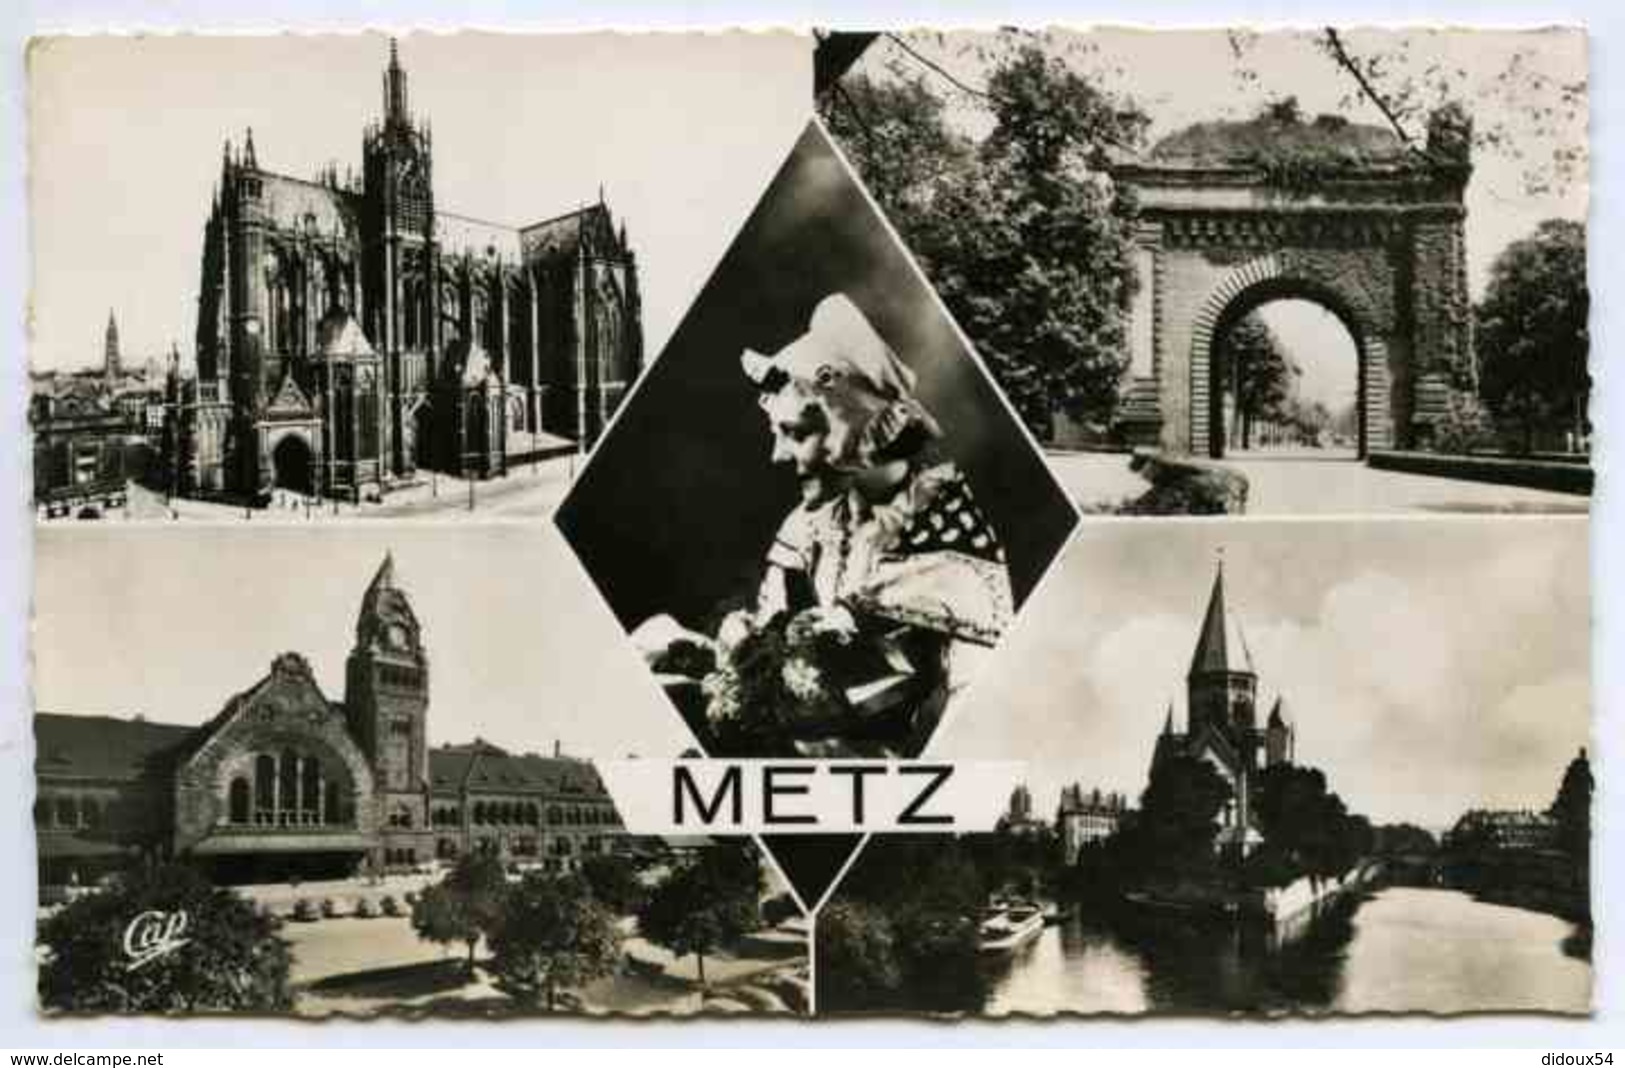 Metz - lot 80 cpa